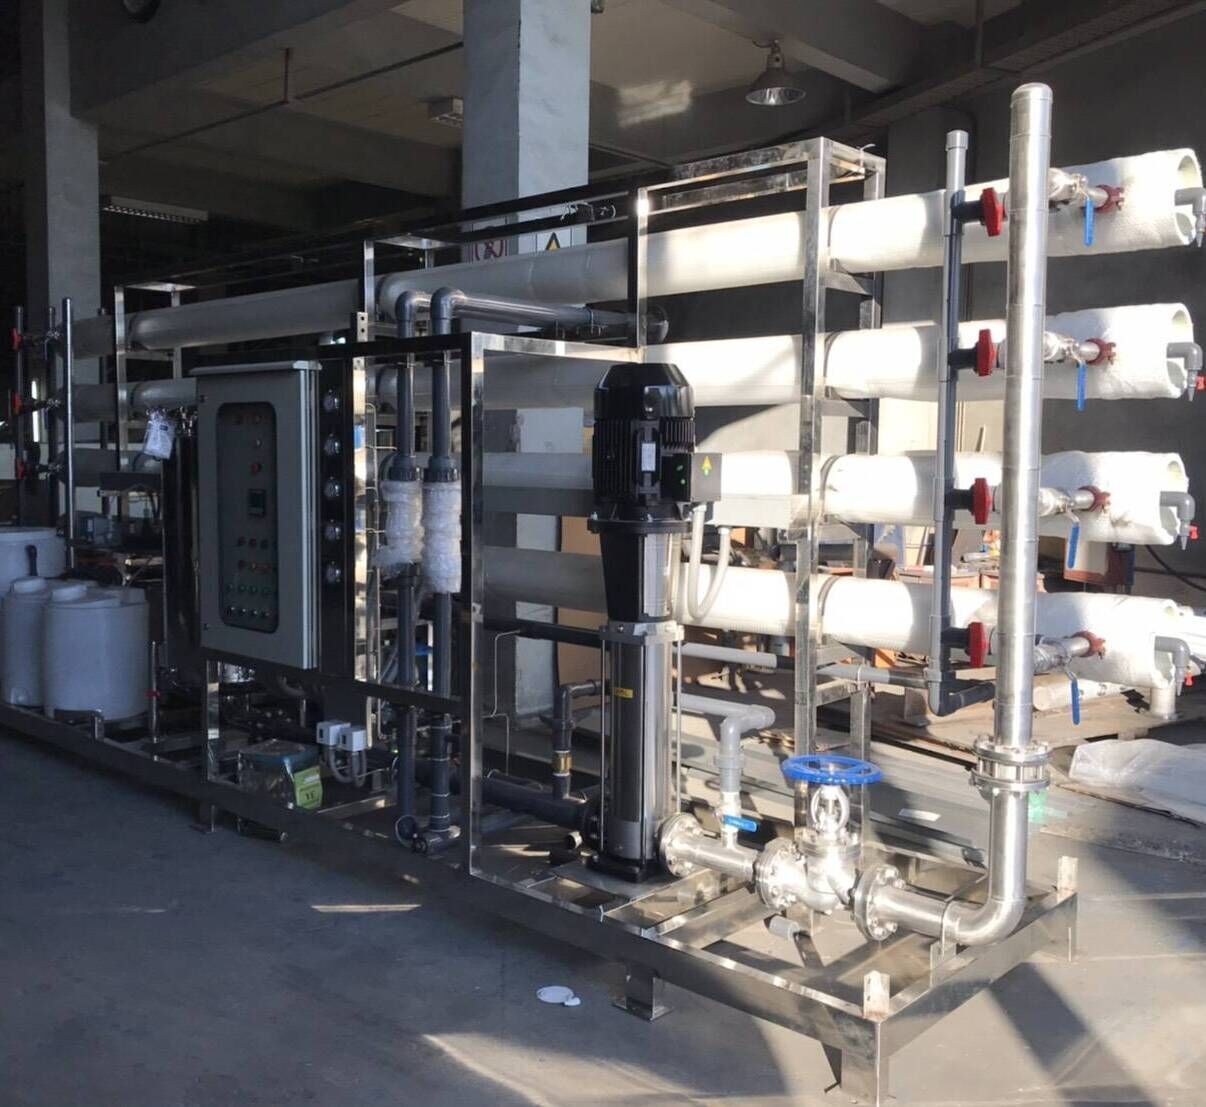 เครื่องกรองน้ำระบบ RO ระบบ Rverse Osmosis เครื่่องกรองน้ำโรงงานอุตสาหกรรม